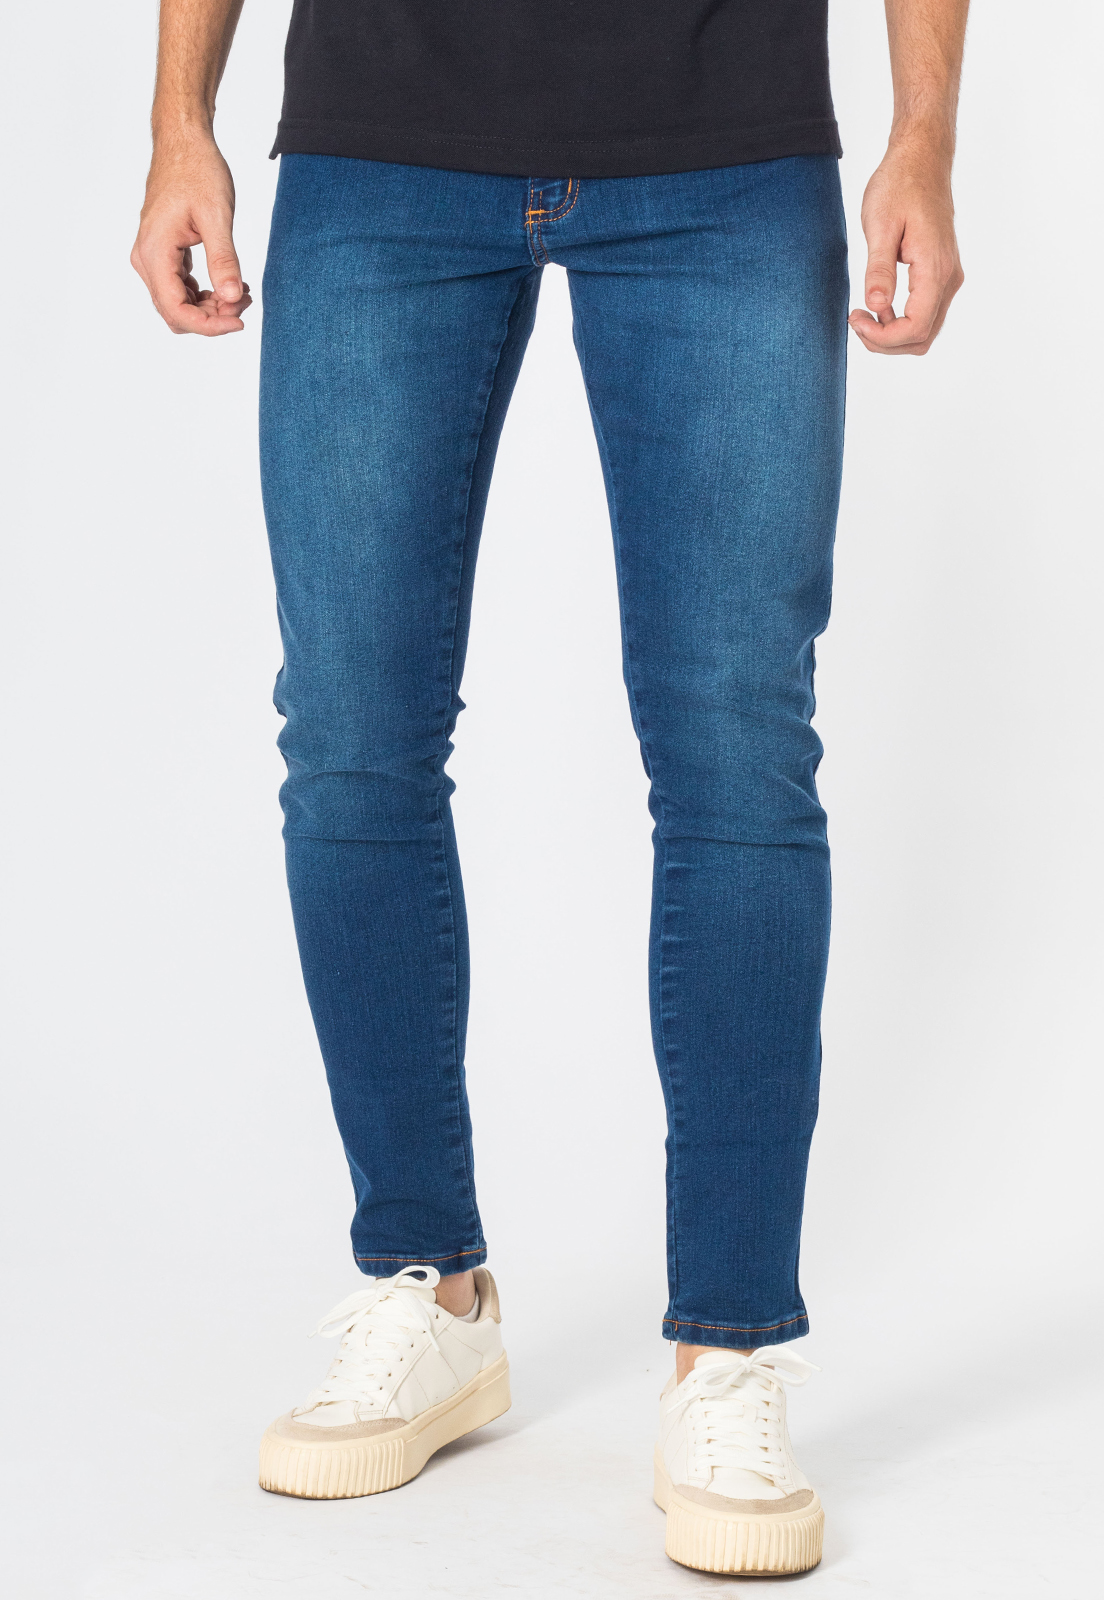 Calça Jeans Masculina Curta Skinny Com Elastano Bolso Azul